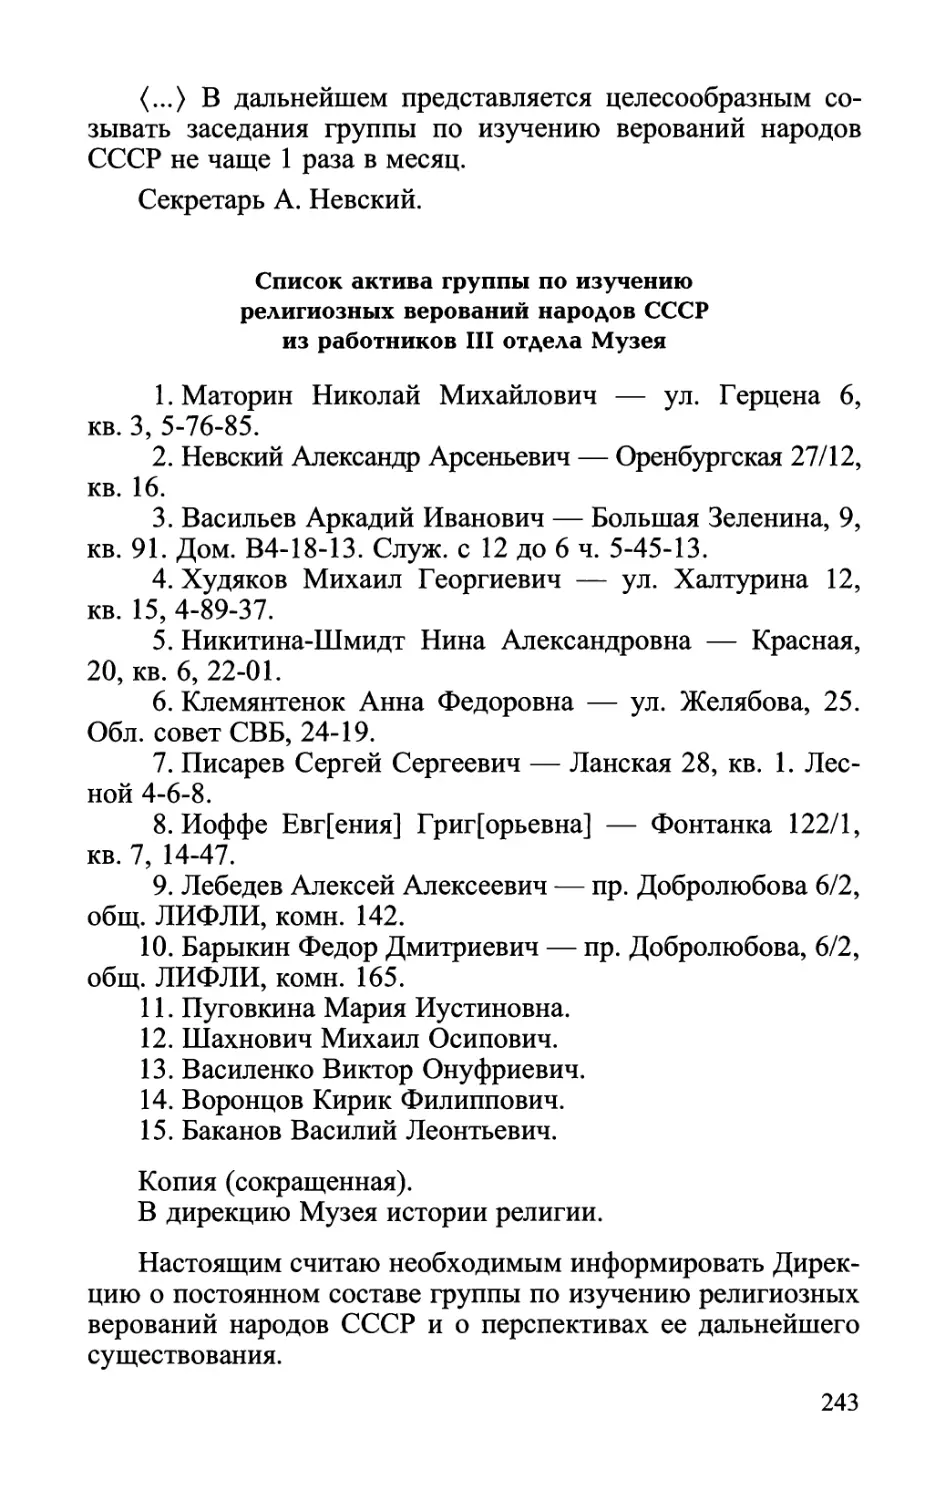 Список актива группы по изучению религиозных верований народов СССР из работников III отдела Музея